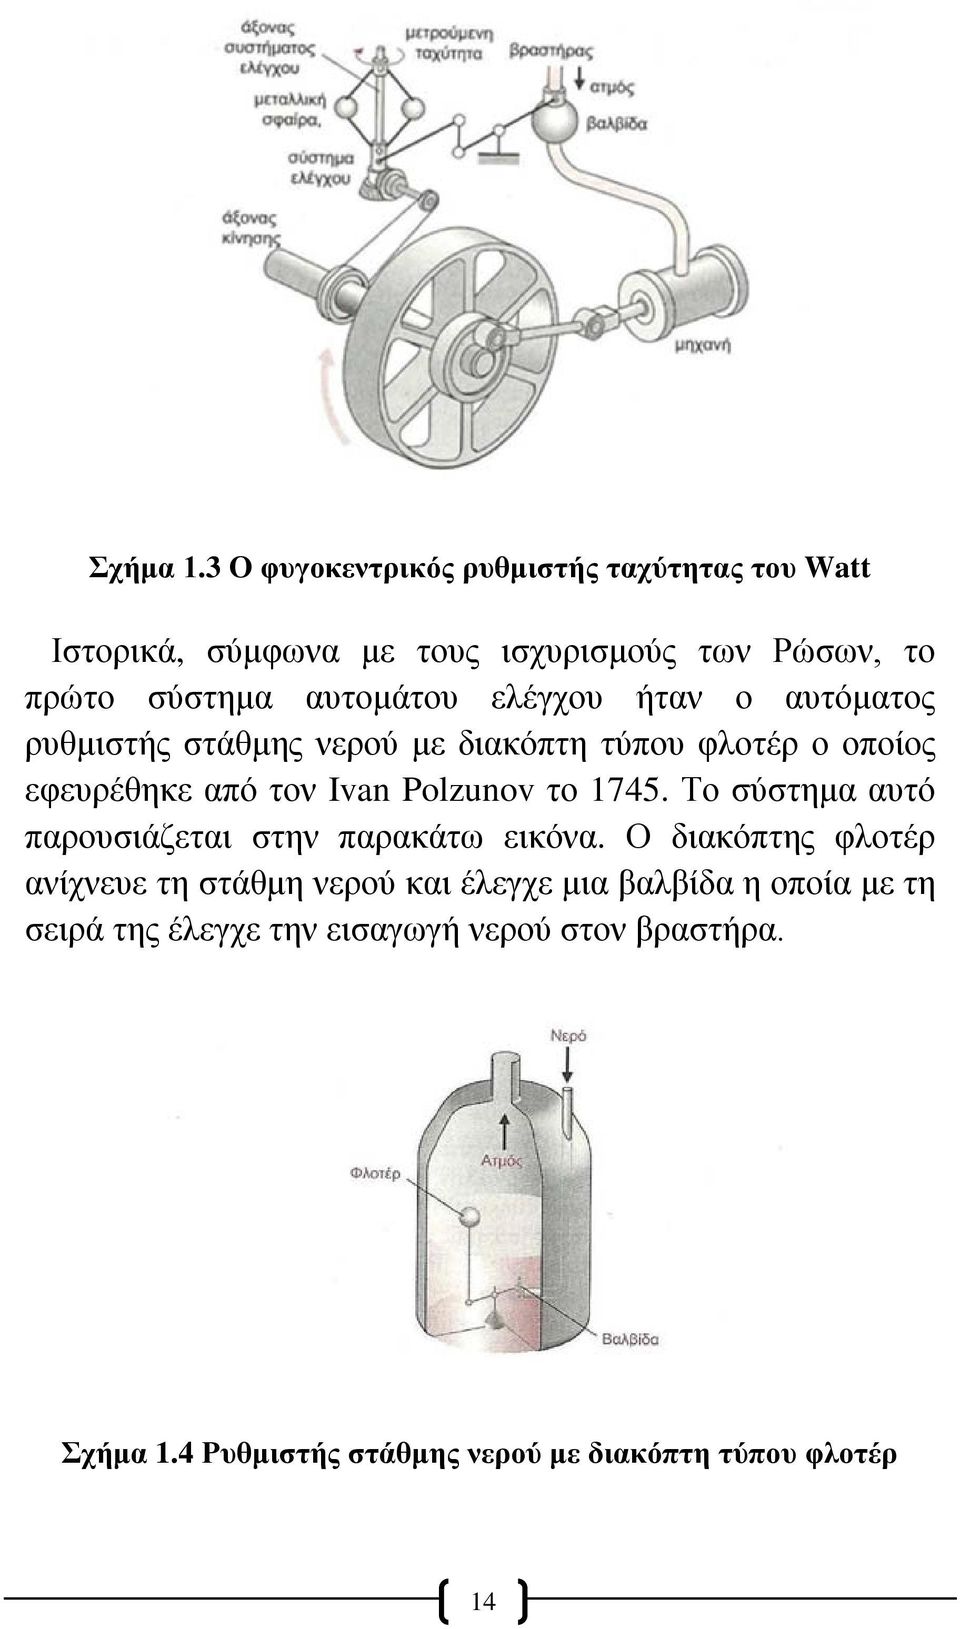 ελέγχου ήταν ο αυτόματος ρυθμιστής στάθμης νερού με διακόπτη τύπου φλοτέρ ο οποίος εφευρέθηκε από τον Ivan Polzunov το 1745.